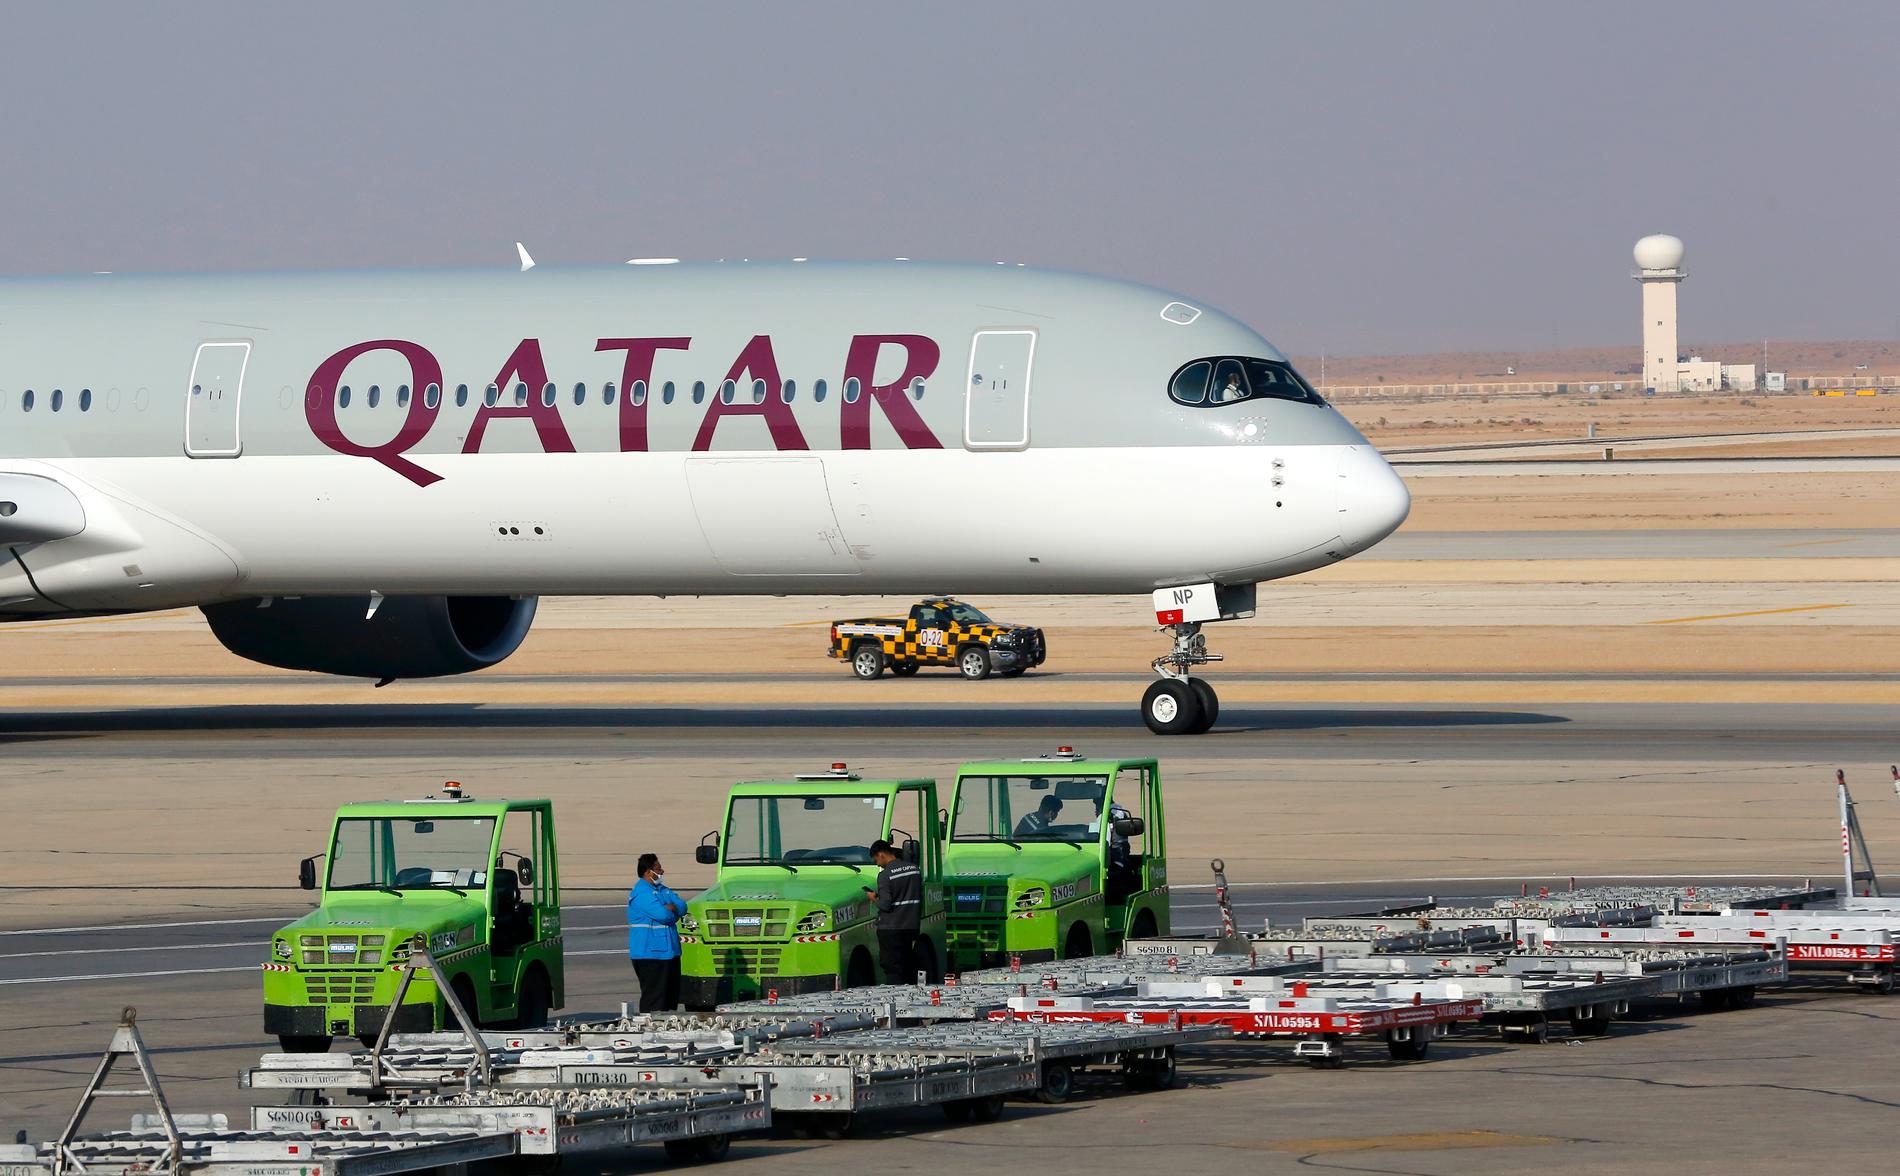 Tidigare i januari kom Saudiarabien, Förenade arabemiraten, Bahrain och Egypten överens om att avsluta sin bojkott av Qatar. På bilden ses det första planet från Qatar Airways som tilläts landa i saudiska Riyad på tre år.